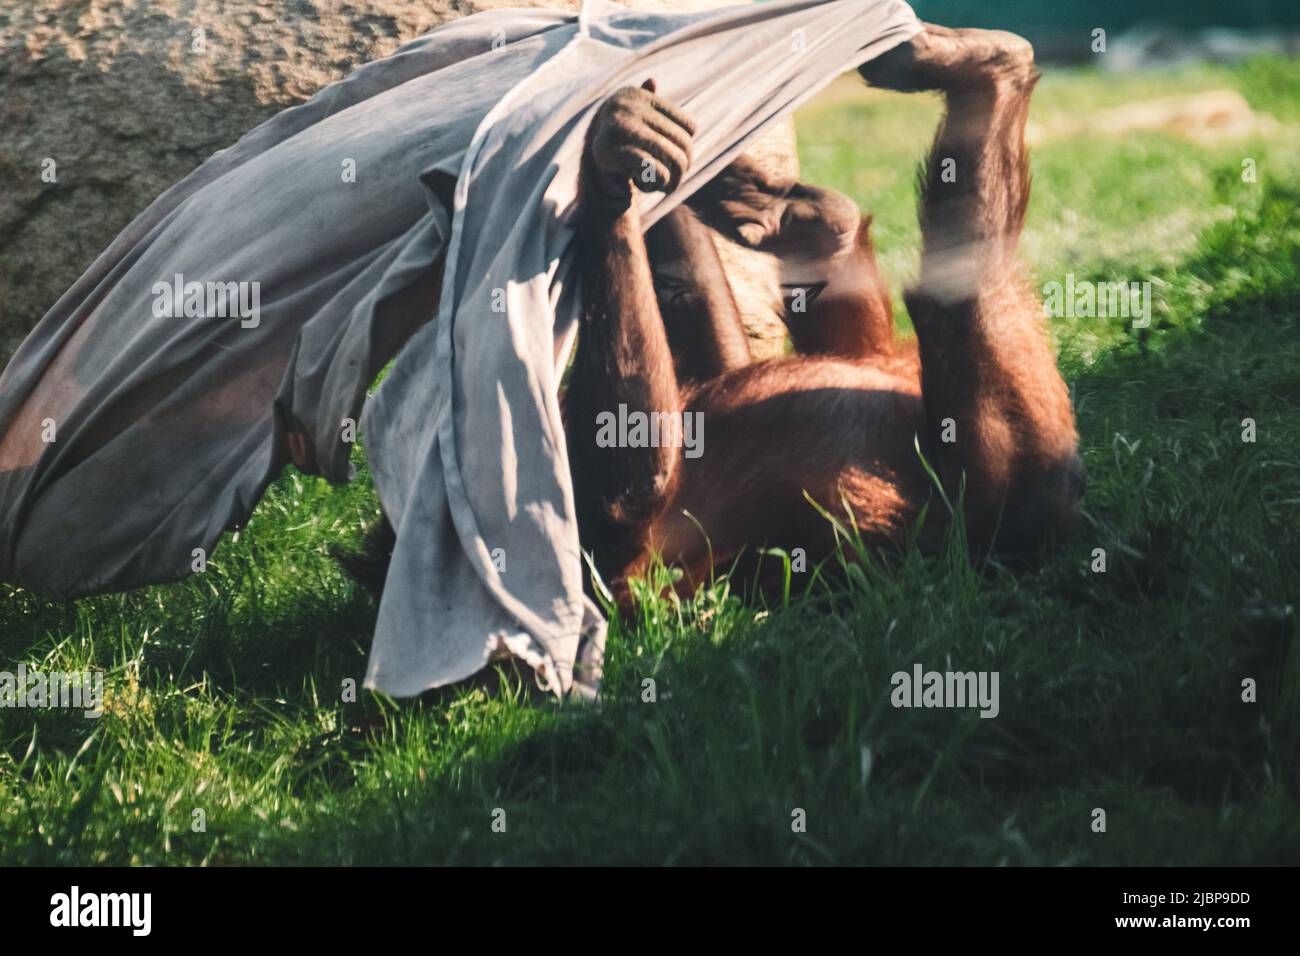 Enfant orang-outan jouant avec du tissu sur l'herbe verte dans le zoo. Singes animaux, plus grand mammifère arboricole à fourrure rouge Banque D'Images